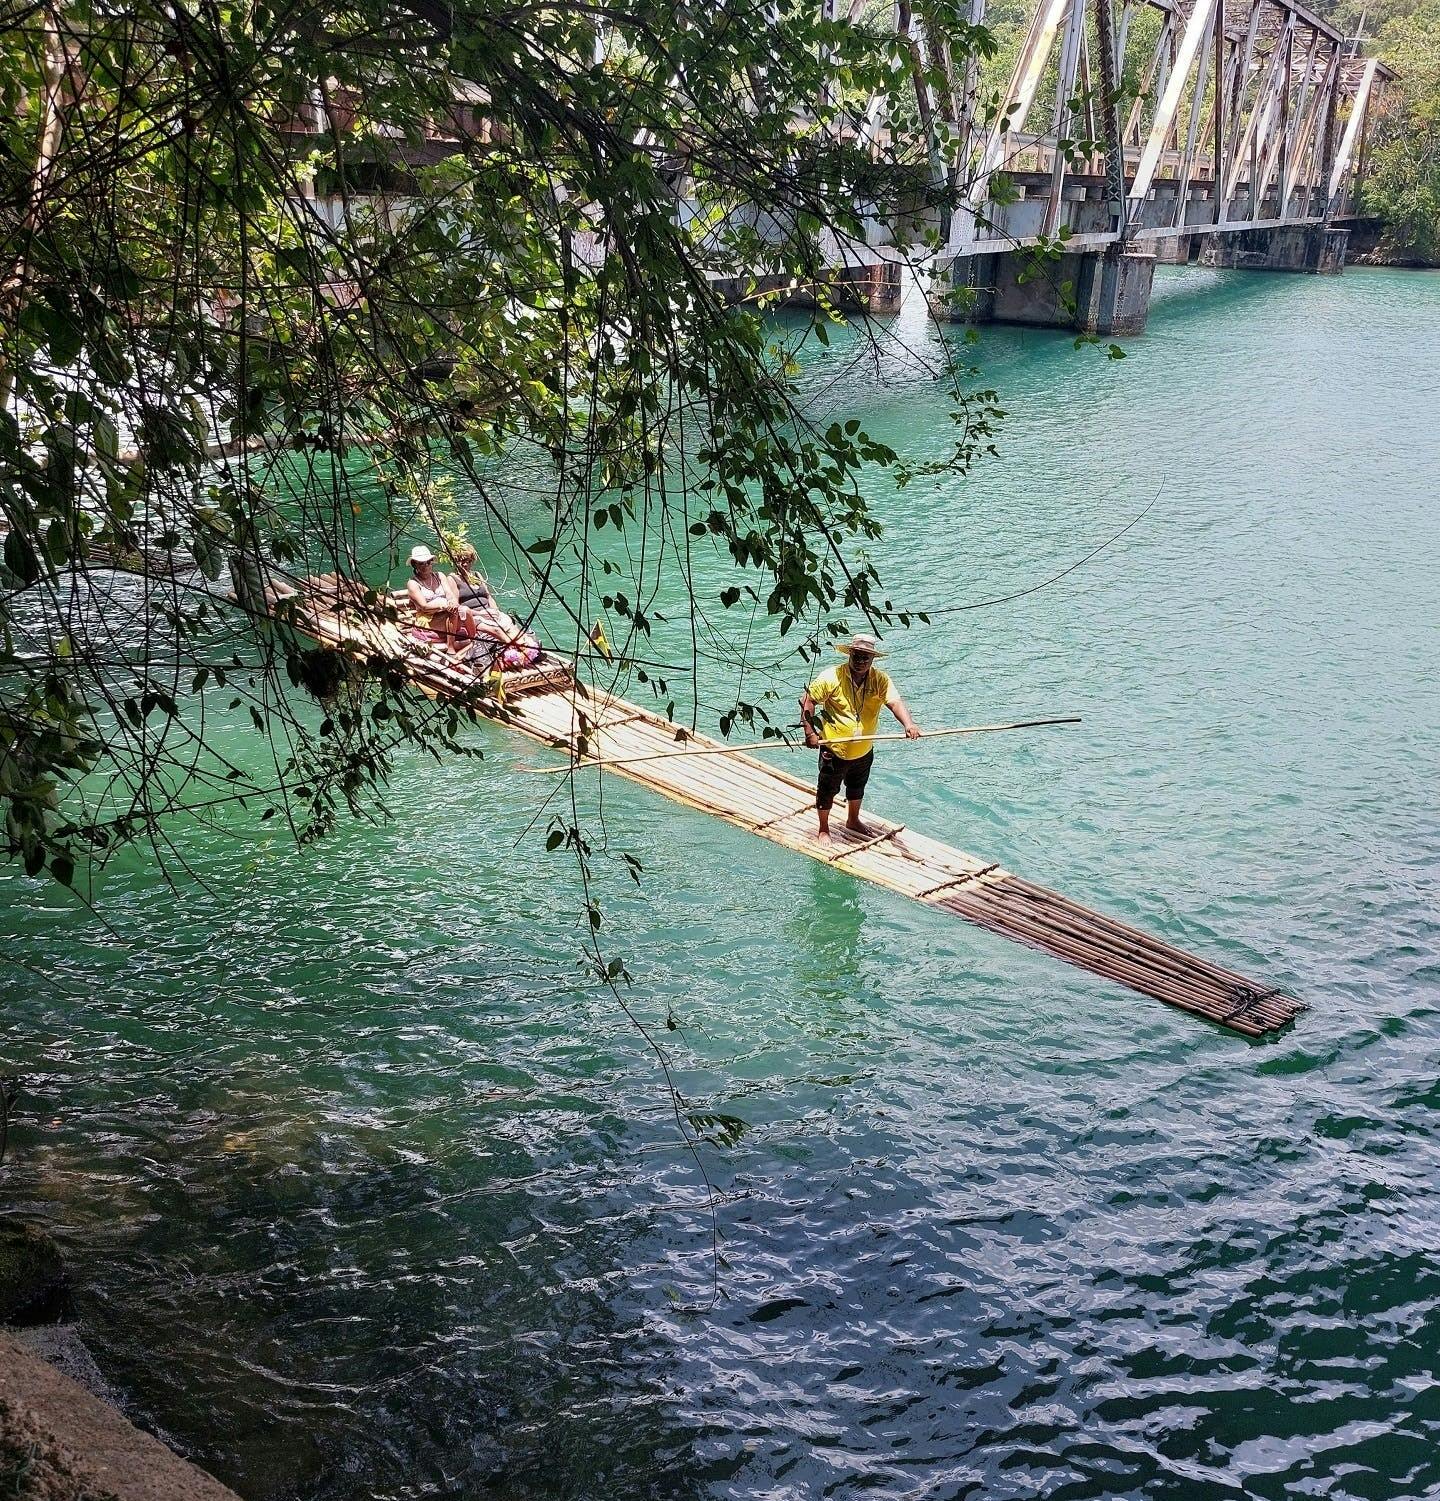 Experiência Privada de Rafting em Bambu no Rio Grande